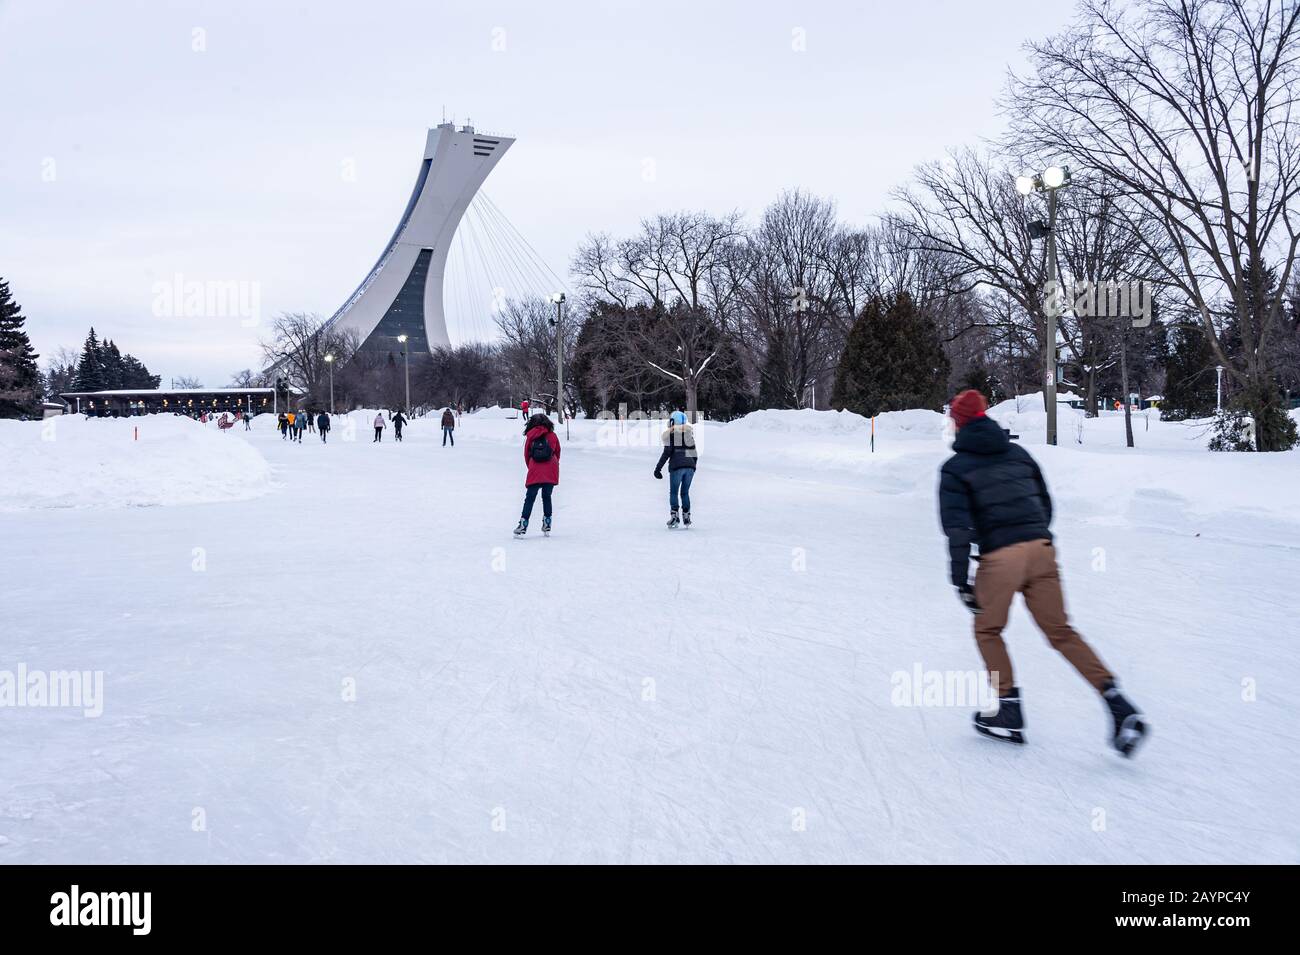 Montréal, CA - 15 février 2020 : patinage sur glace des gens à la patinoire du parc Maisonneuve avec la tour du stade olympique en arrière-plan. Banque D'Images